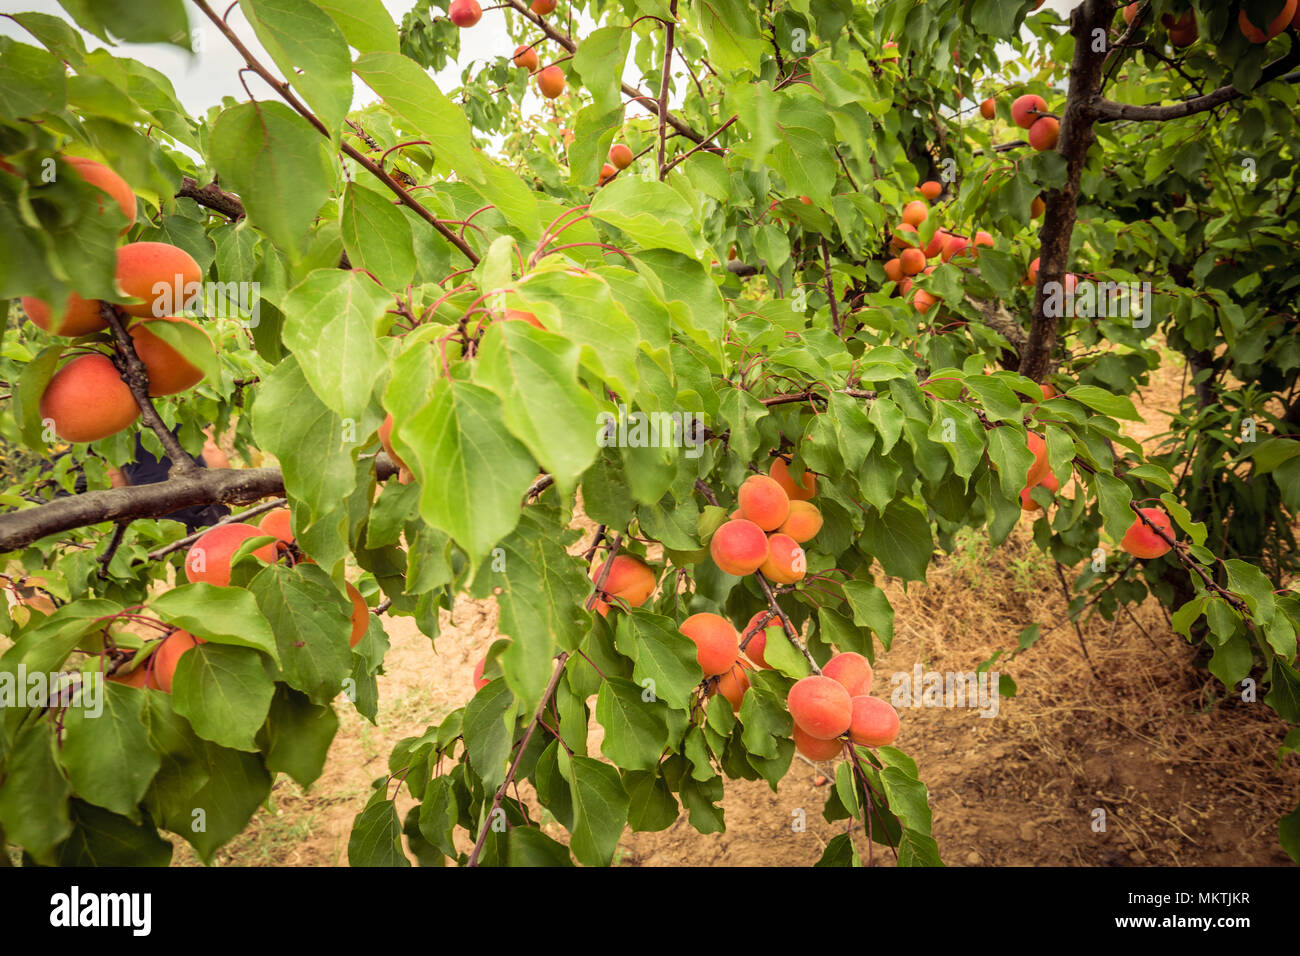 Aprikosenbaum. Branchen mit Aprikosen und grüne Blätter Stockfoto